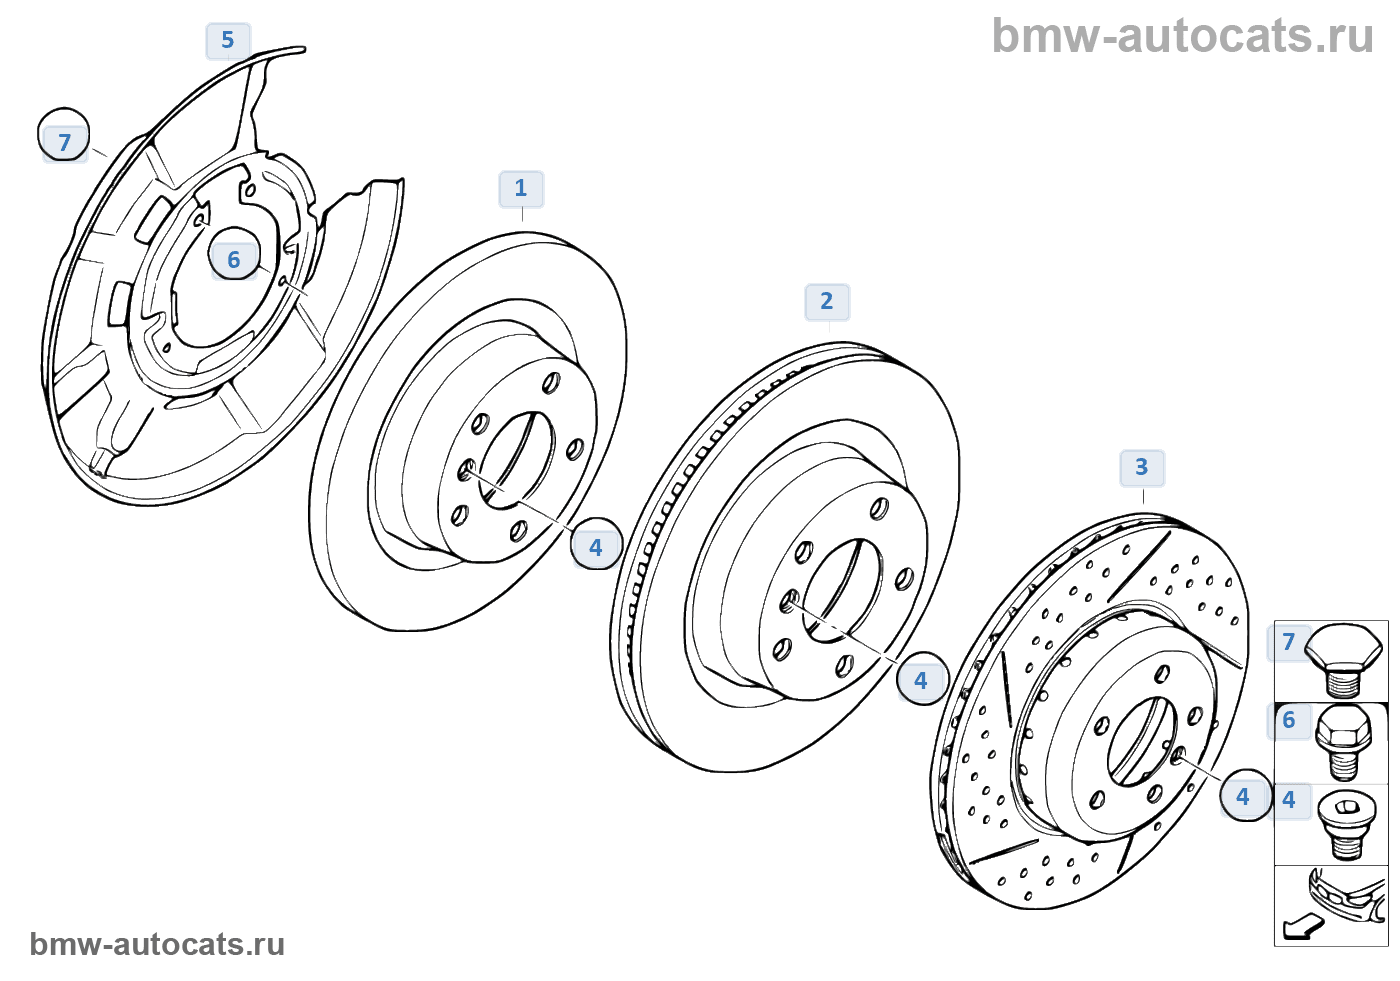 1 6 21 34. Схема задних тормозные дисков BMW e60. Тормозные диски БМВ 118i. Колесный диск BMW r1200. BMW 34 21 2 213 313.